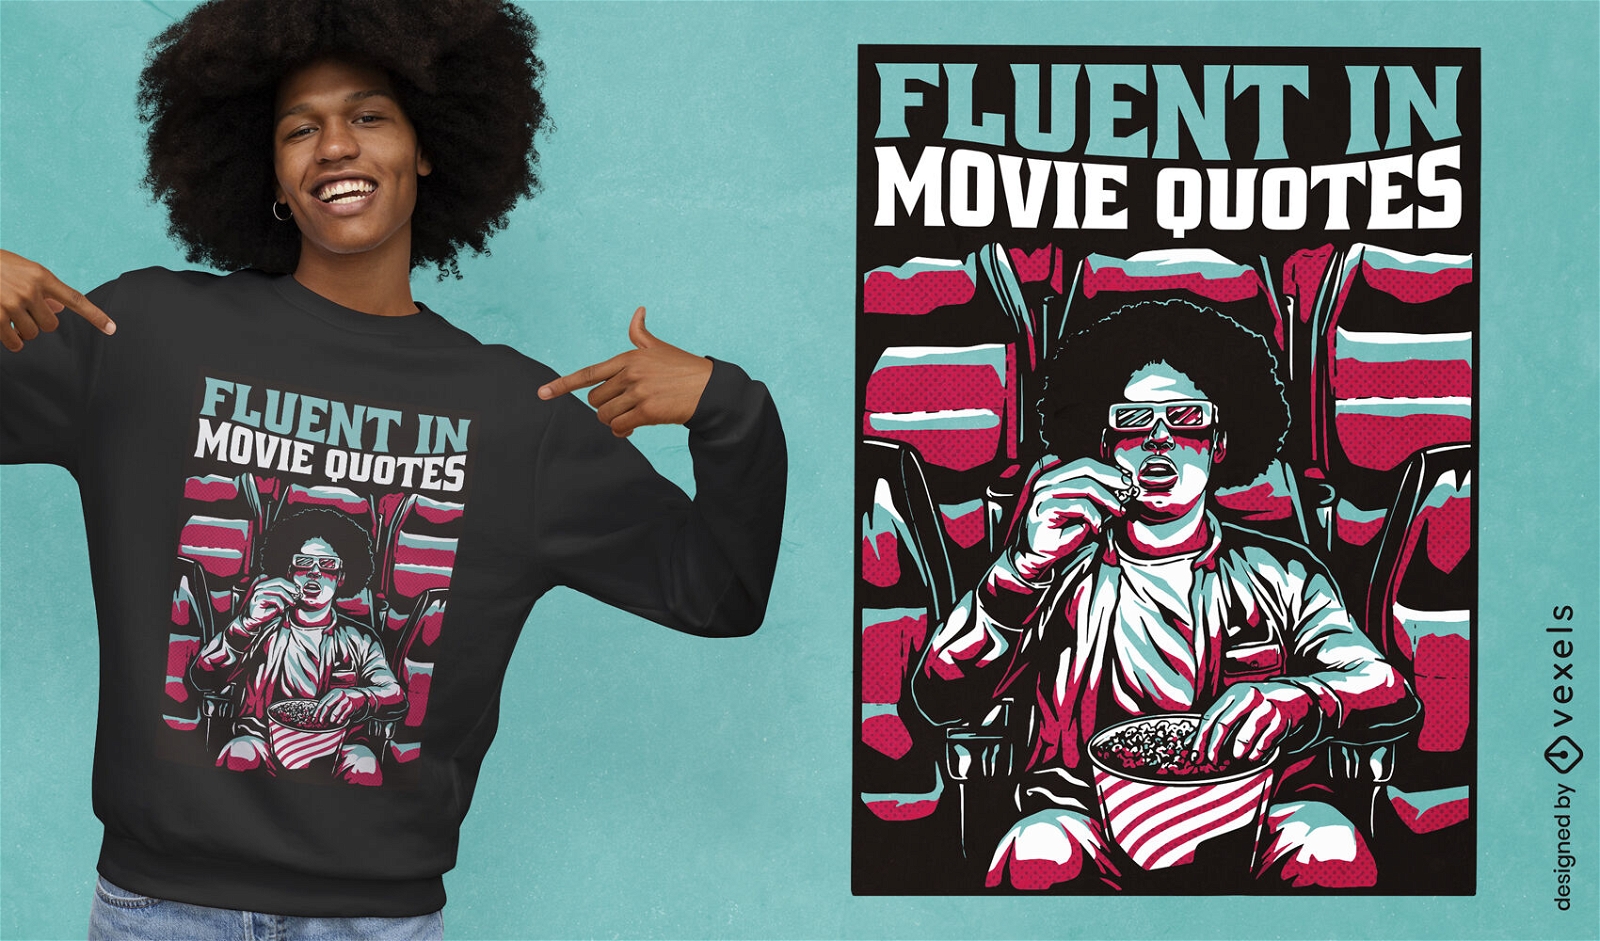 Fluen in movie quotes t-shirt design